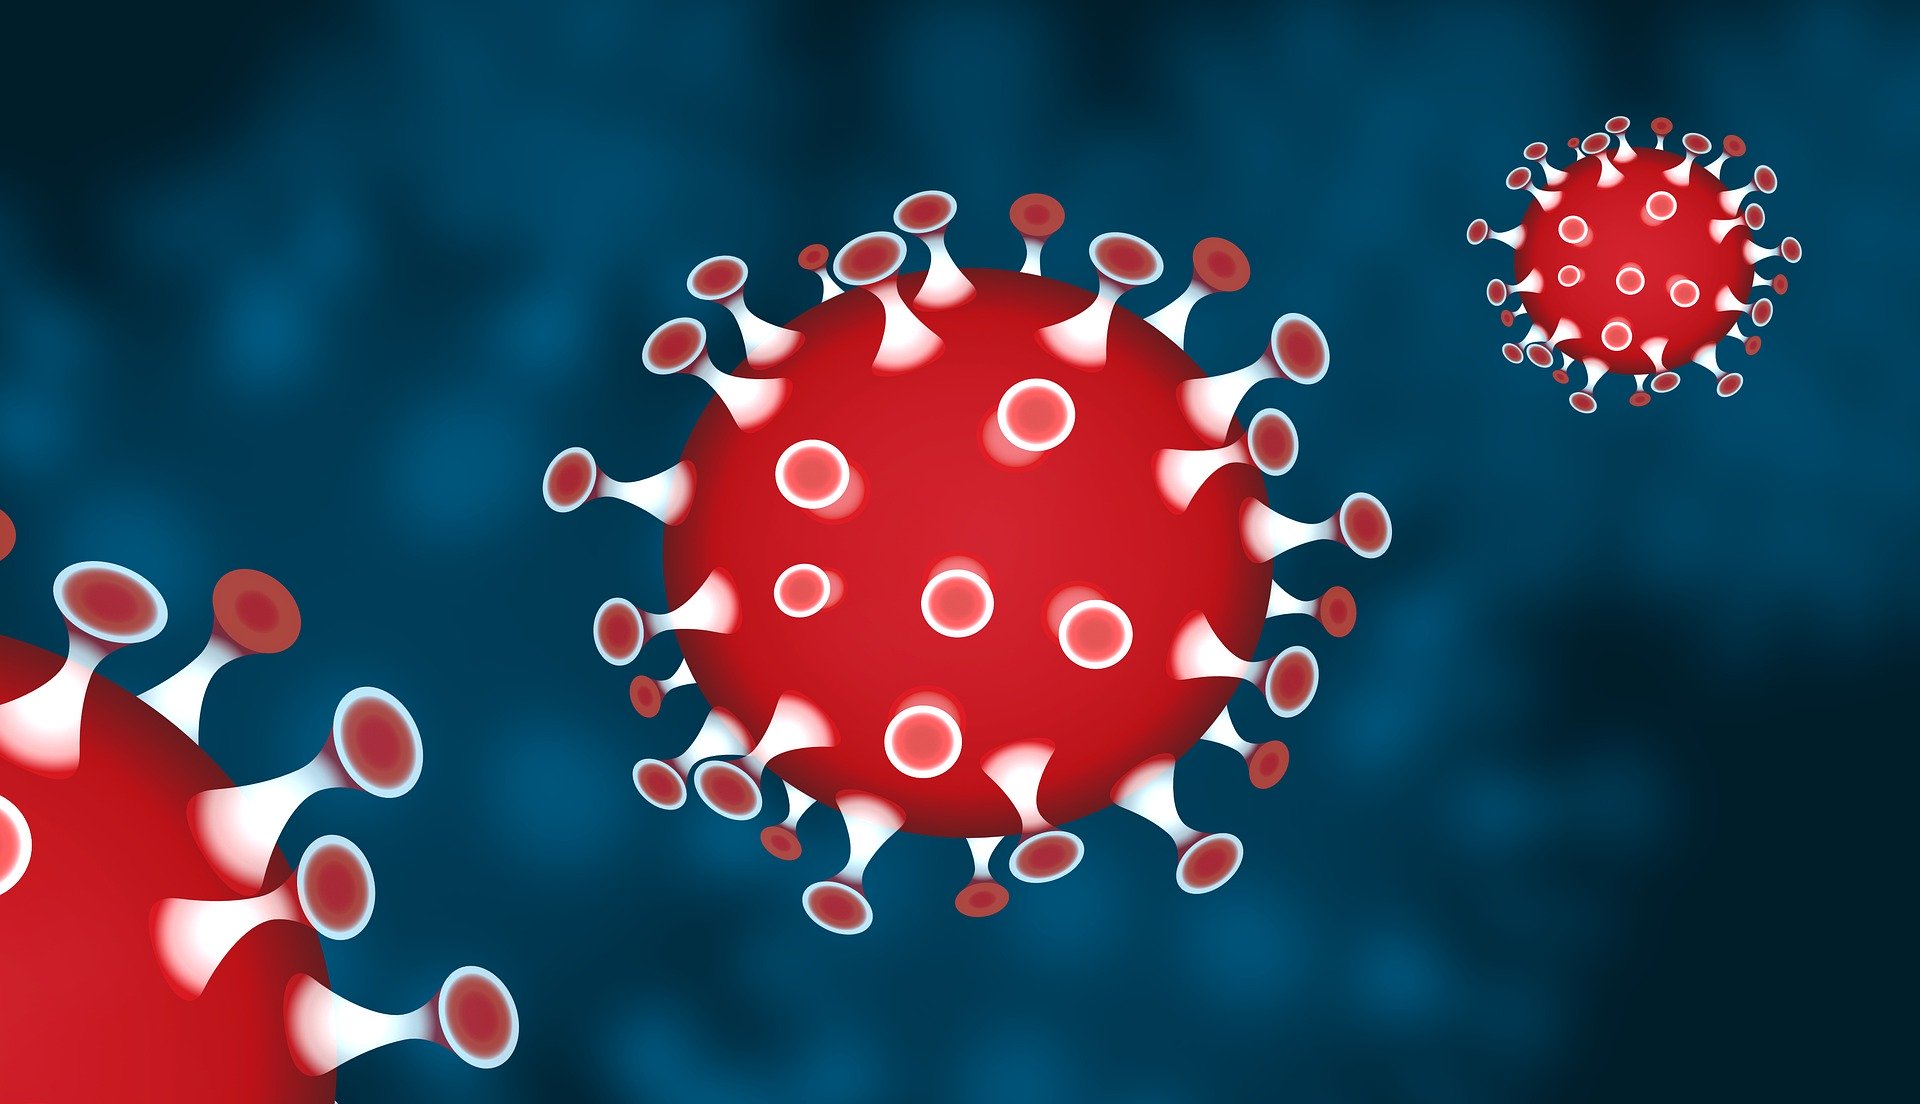 Virus als Piktogramm in rot gezeichnet. Der Hintergrund des Bildes st blau.